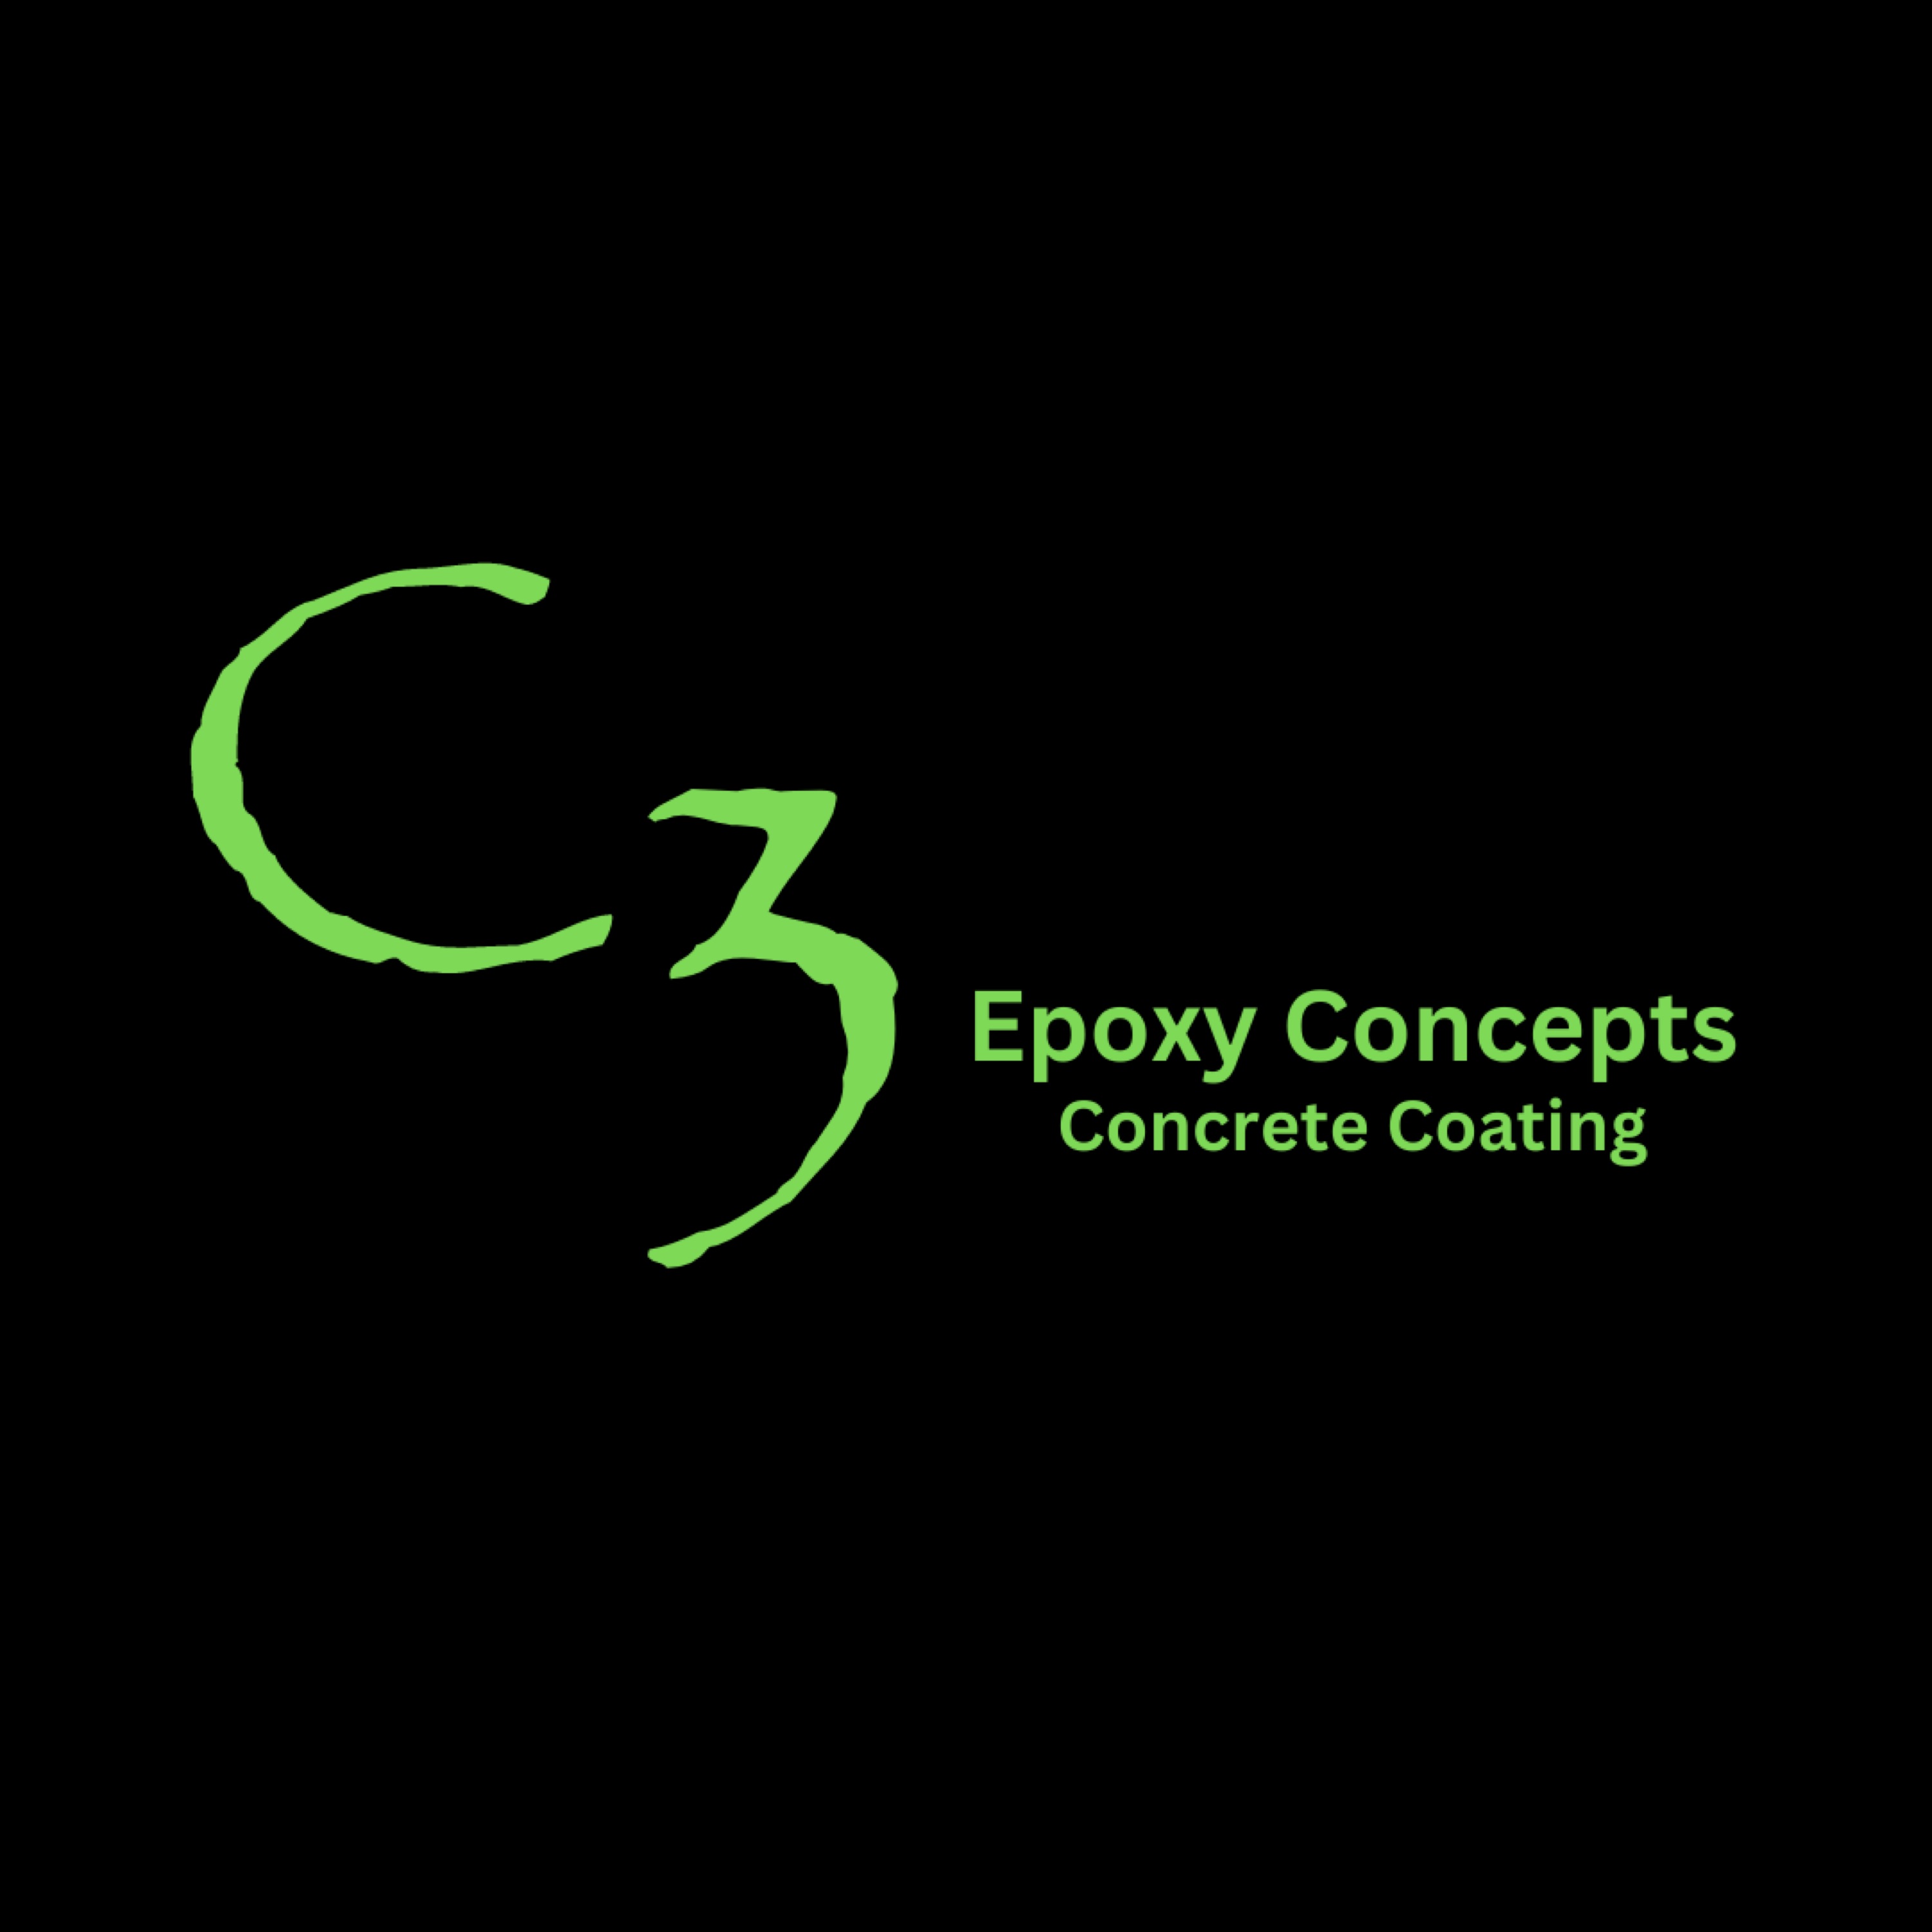 C3 Epoxy Concept Logo